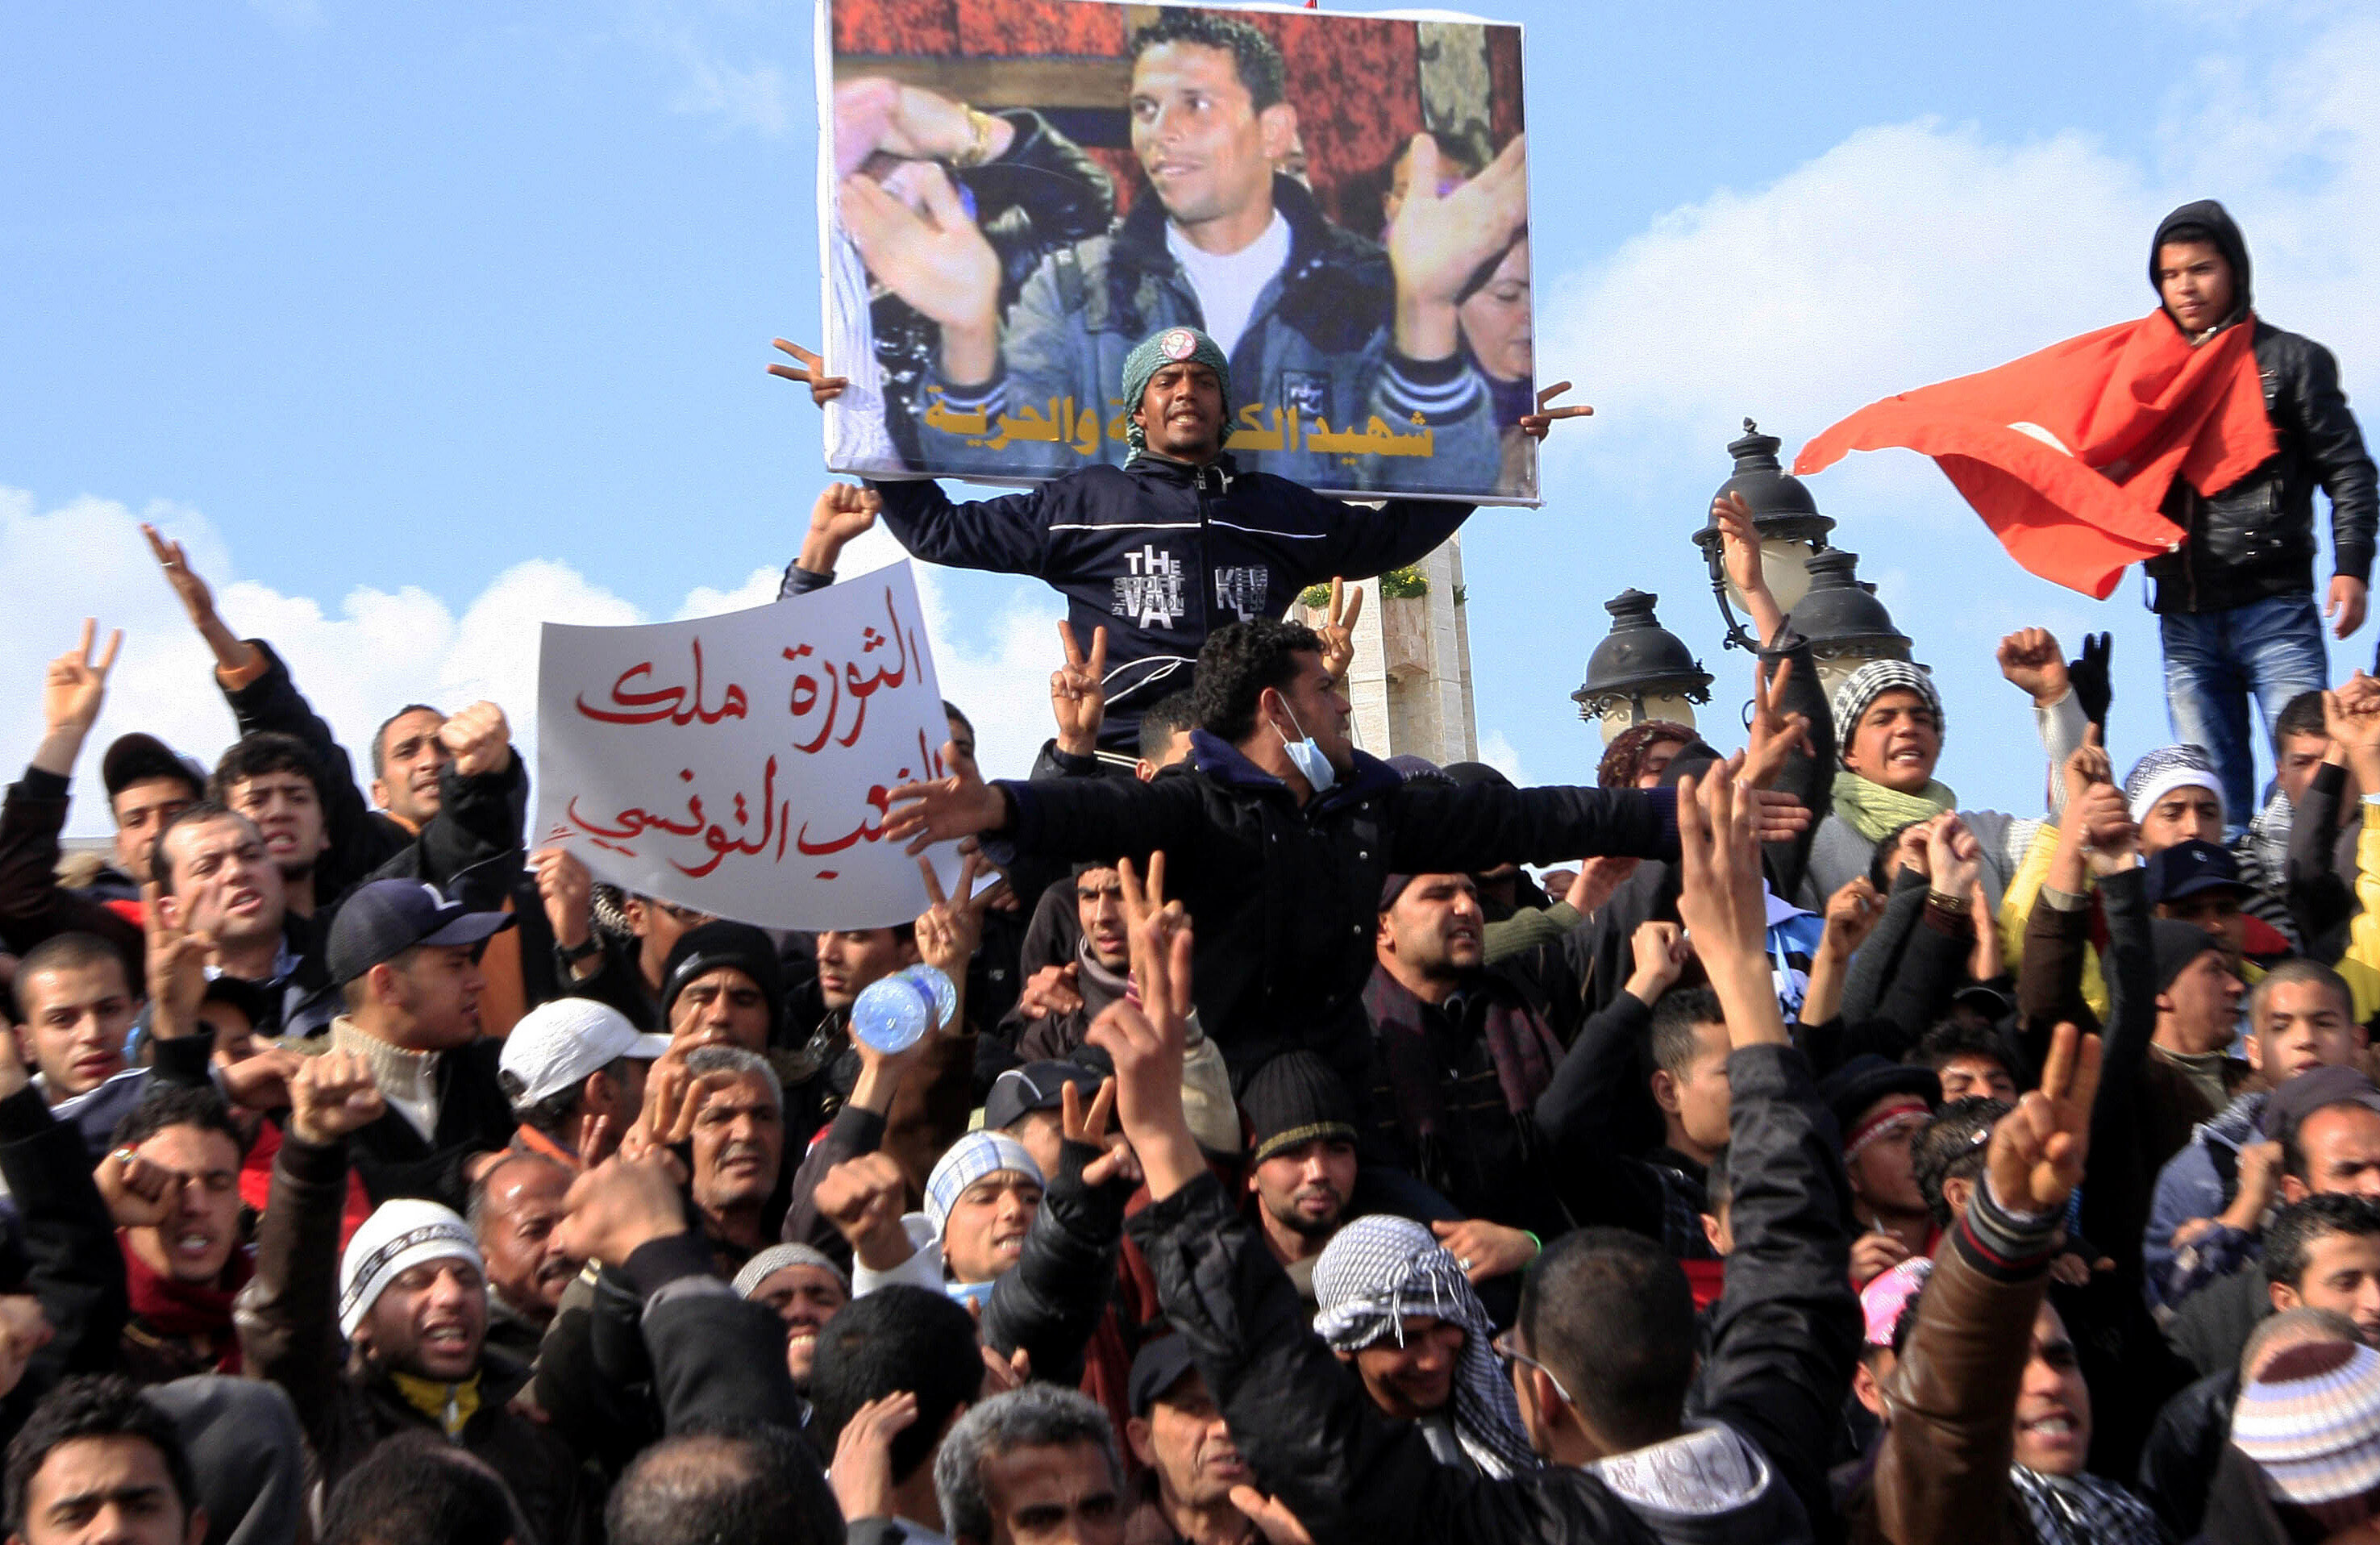 Vom Arabischen Frühling in den Islamistischen Winter – und dann? Eine Bilanz nach 11 Jahren